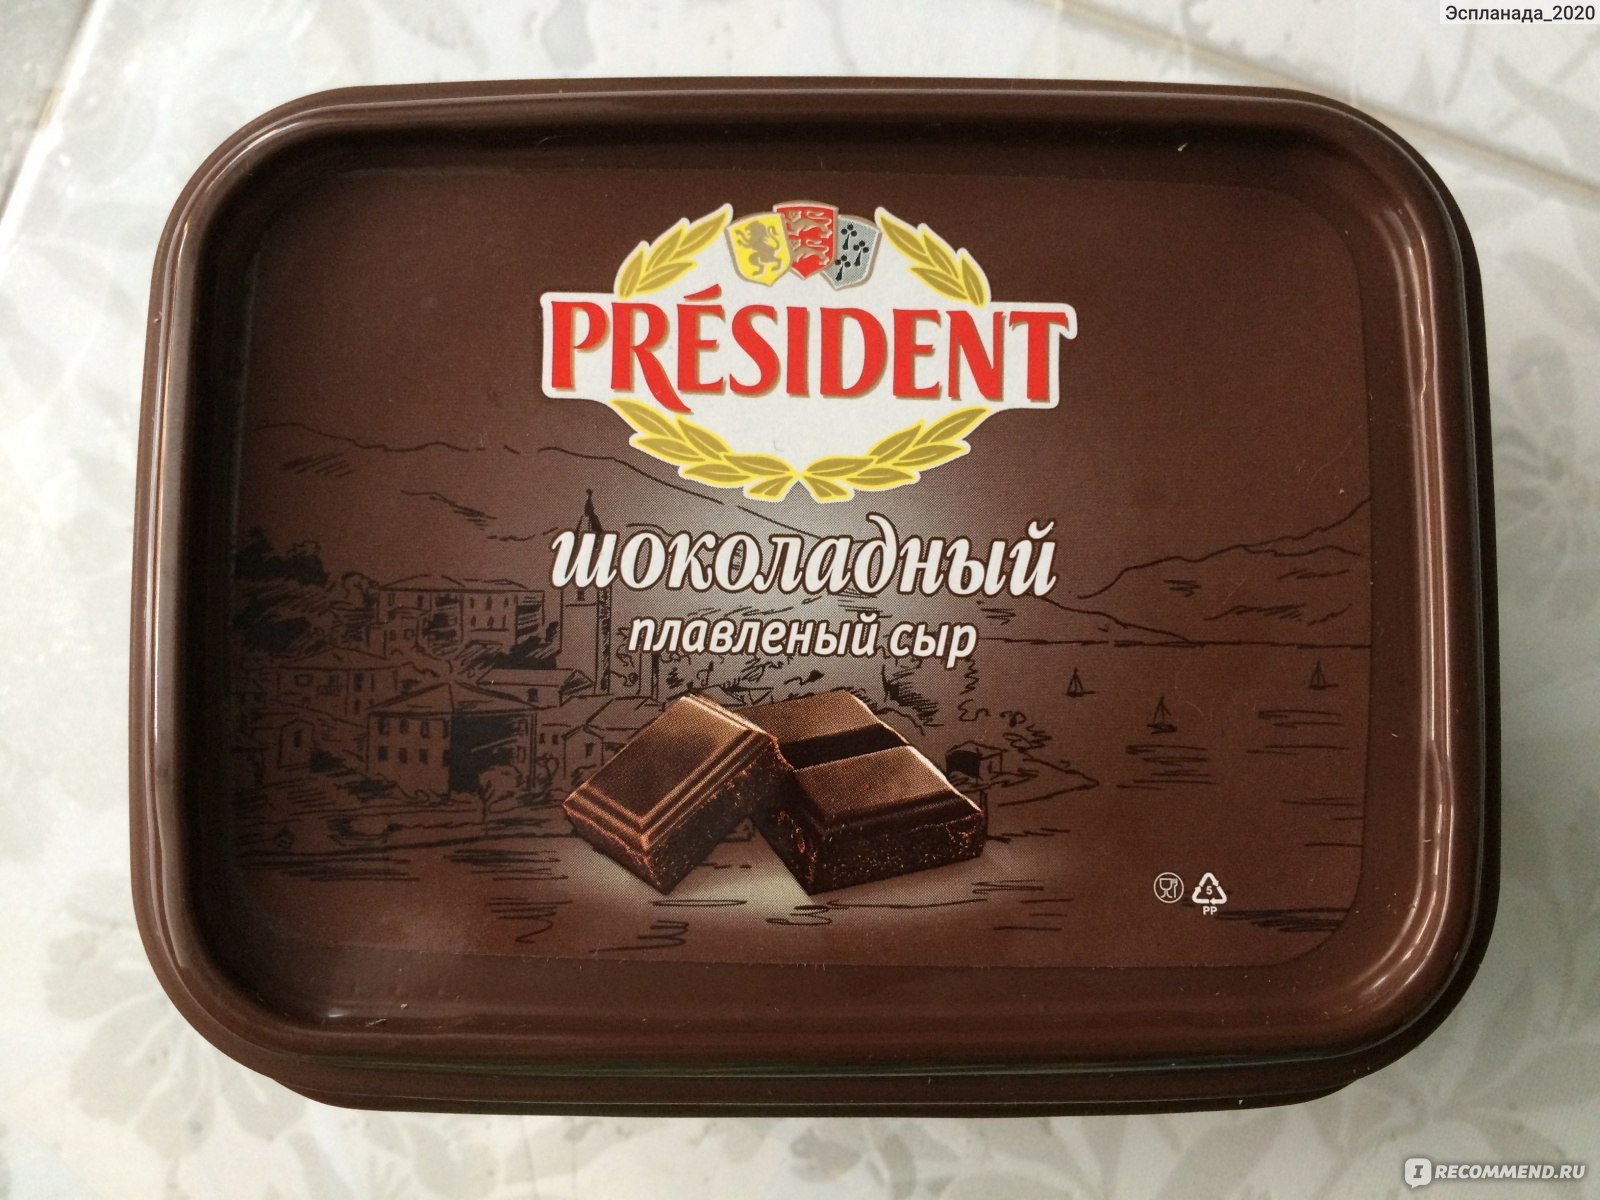 Купить шоколадный сыр. Шоколадный сыр. President шоколадный сыр. Шоколадные плавленные сыры.